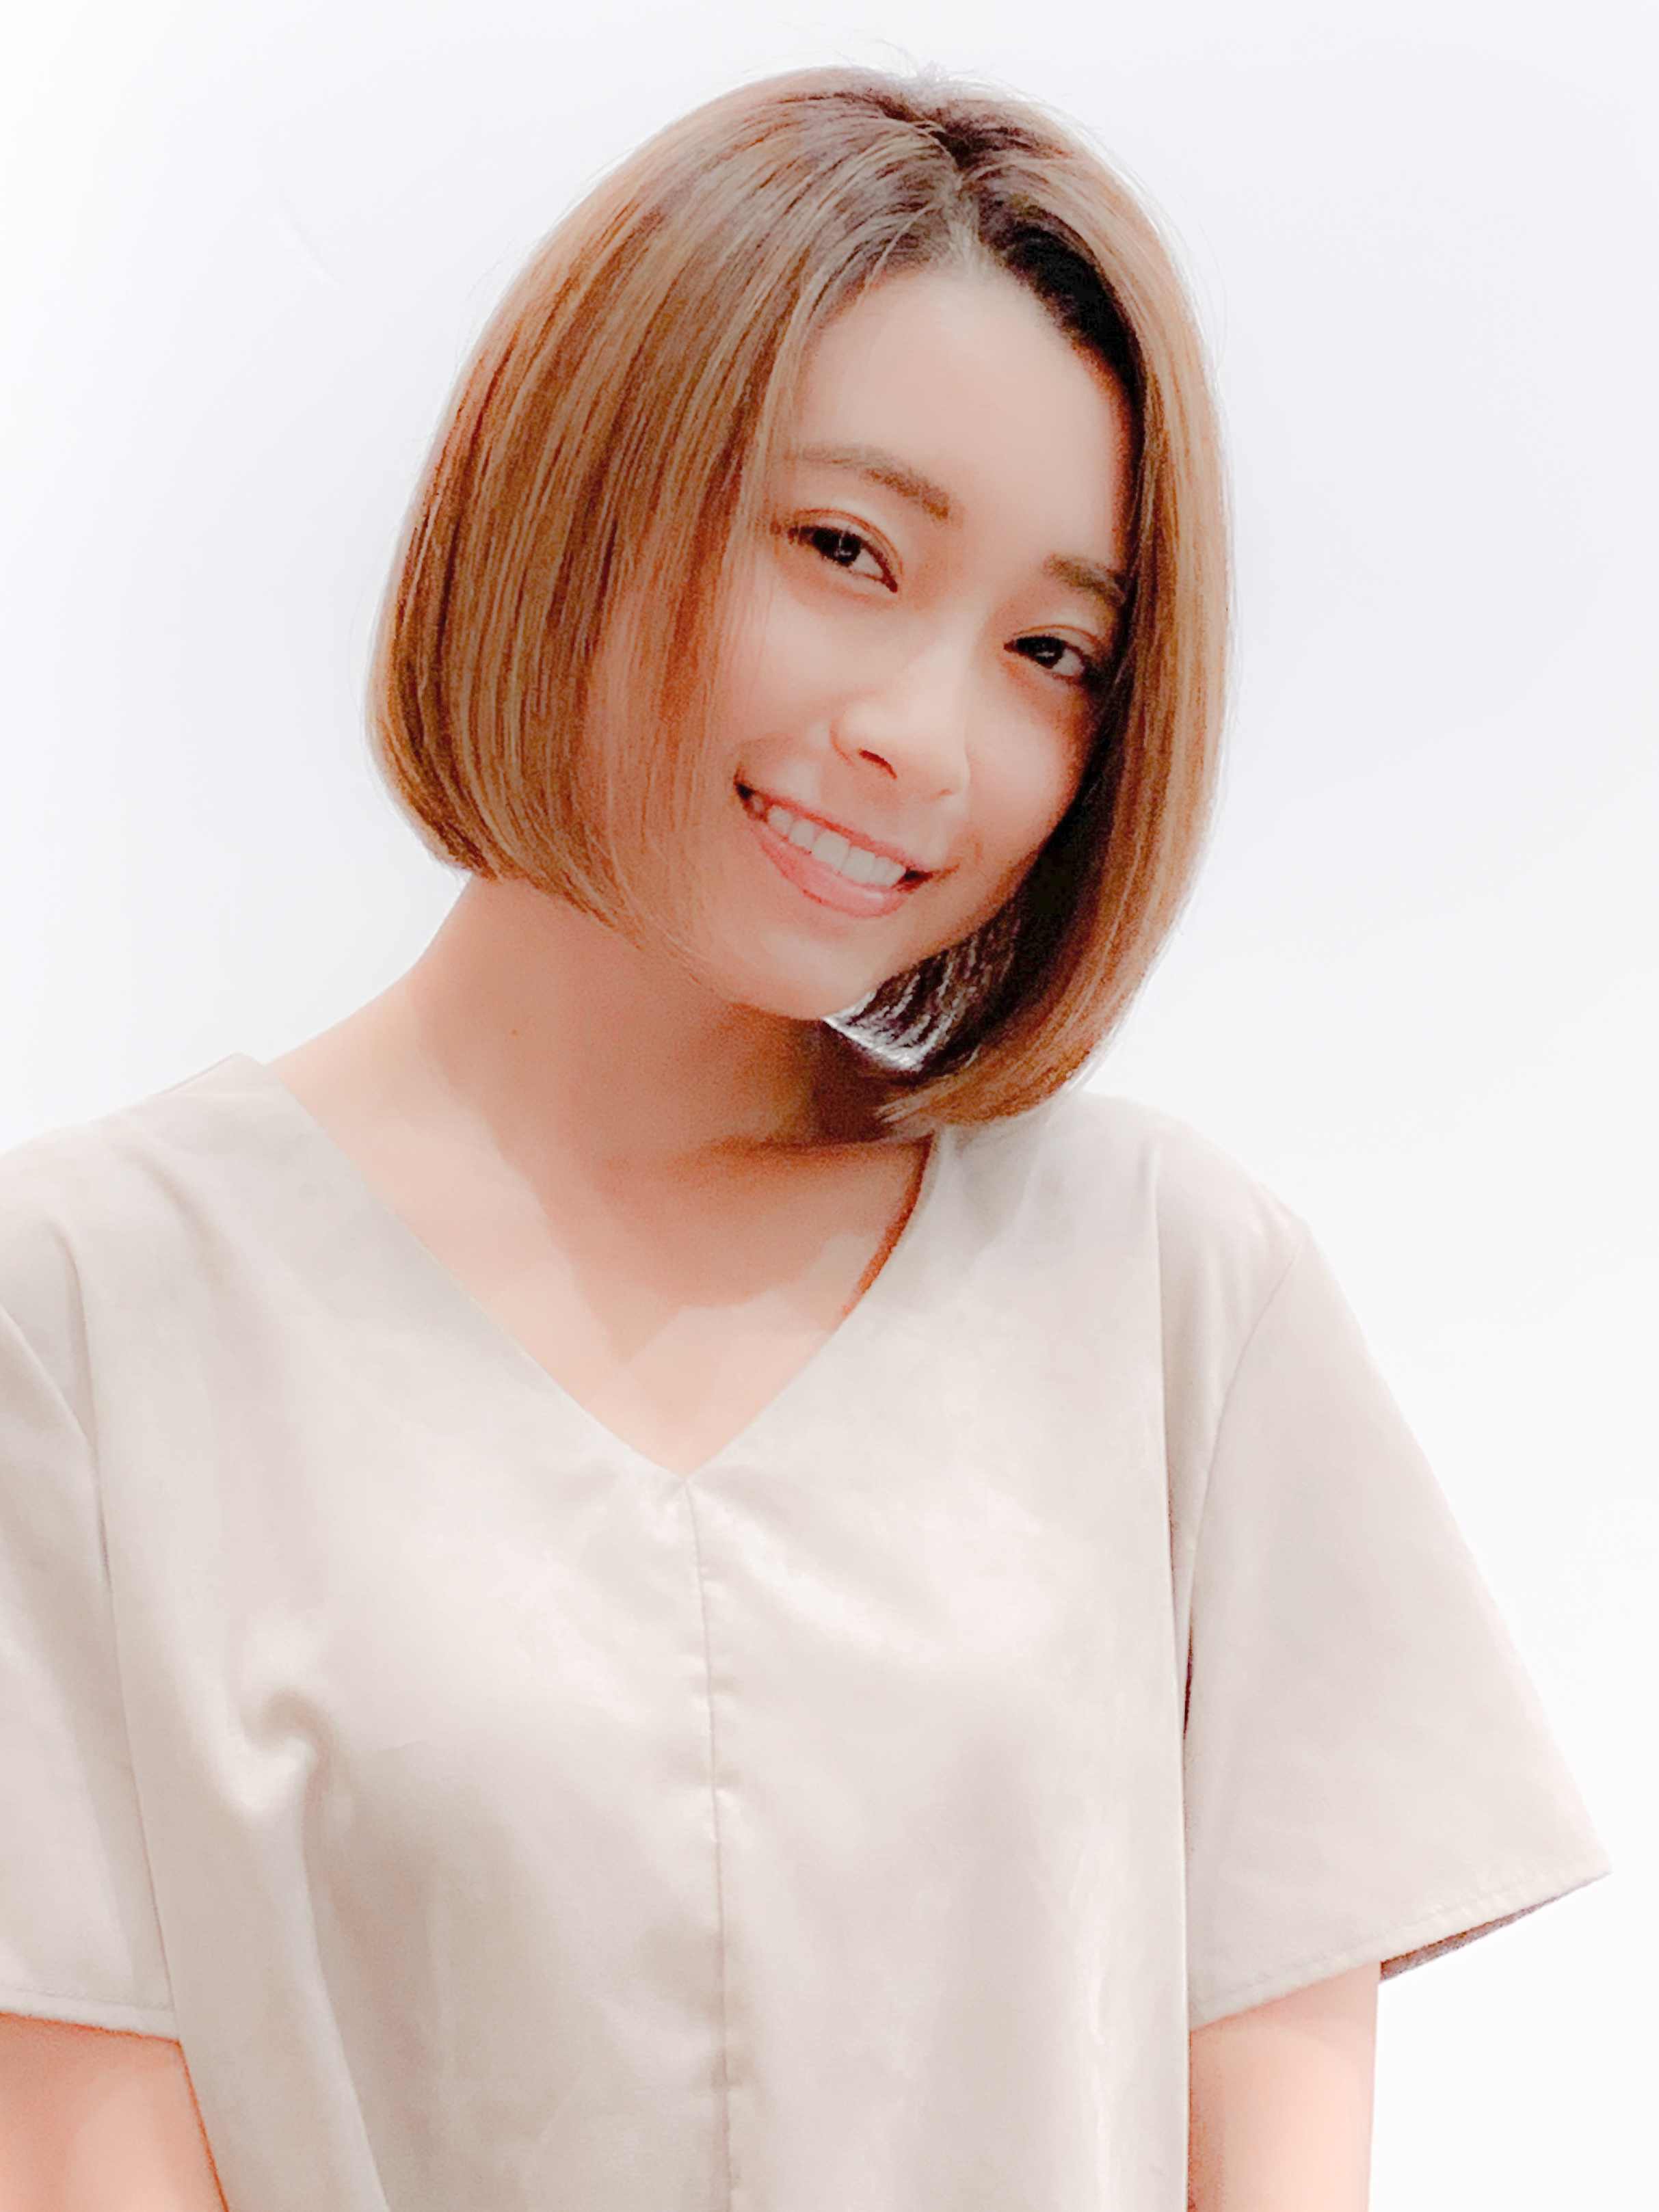 21年春 大人ボブを 前髪あり 前髪なし の変化で 今の自分に似合う髪型に 似合わせカットが上手い東京の美容師 美容室minx銀座 蛭田のブログ